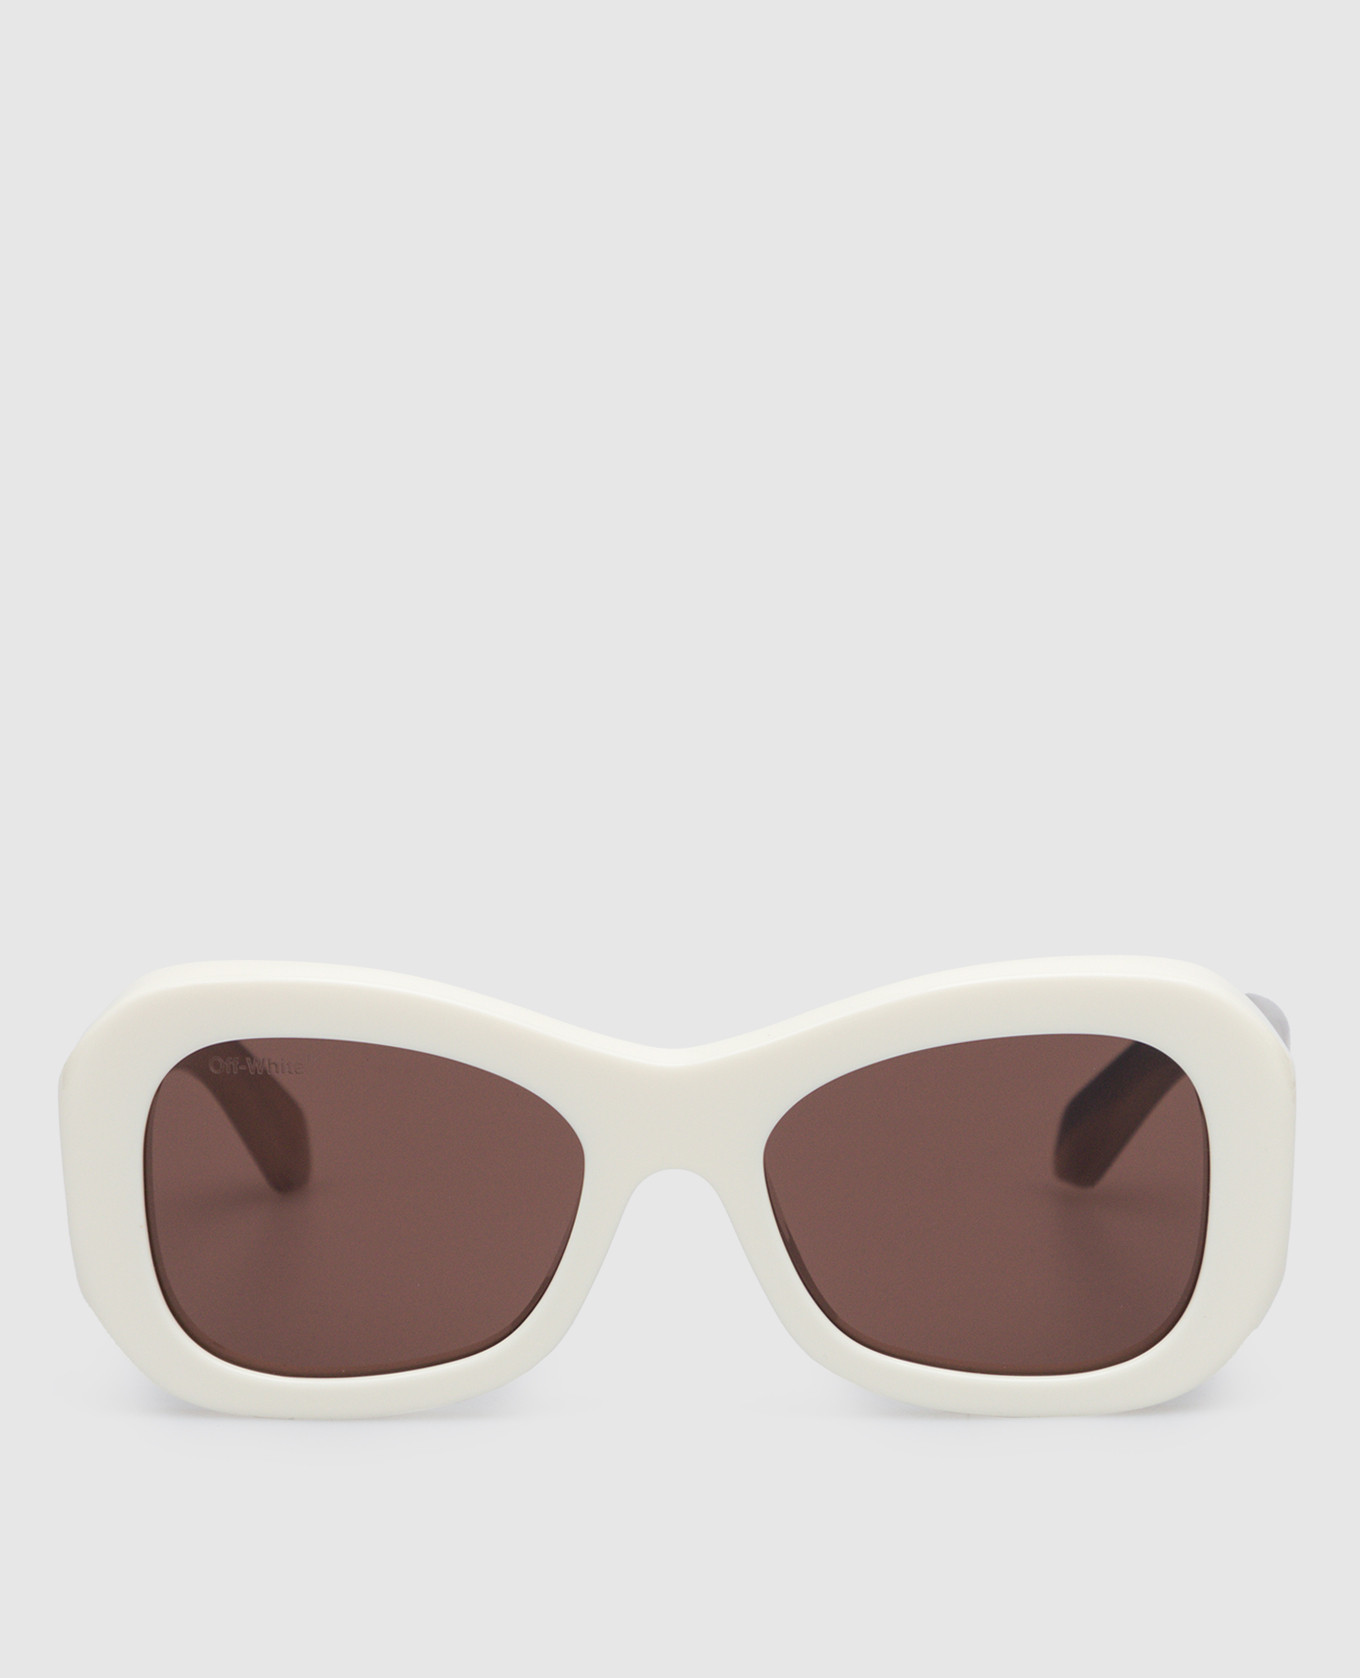 Pablo logo sunglasses in white